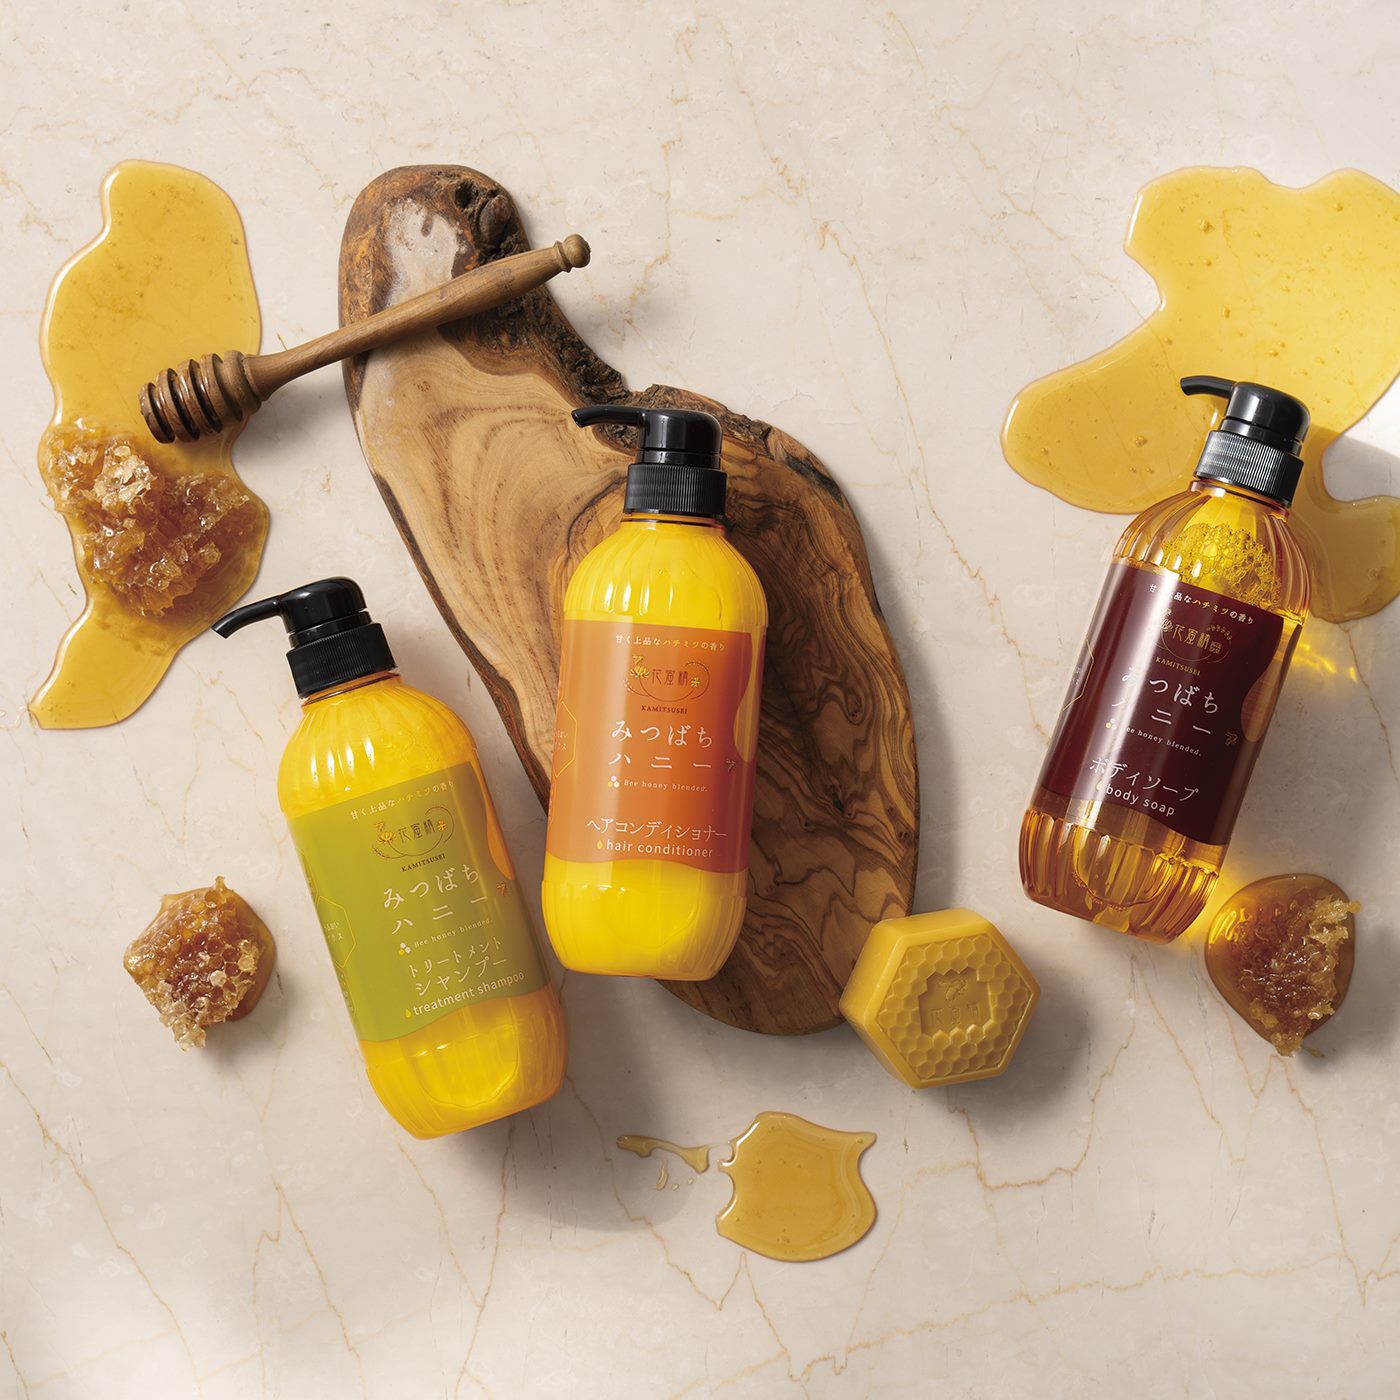 BEAUTY PROJECT|花蜜精　はちみつクレンジングソープの会|肌や髪をしっとりとした質感に導いてくれる花蜜精シリーズ。ぜひお試しください。